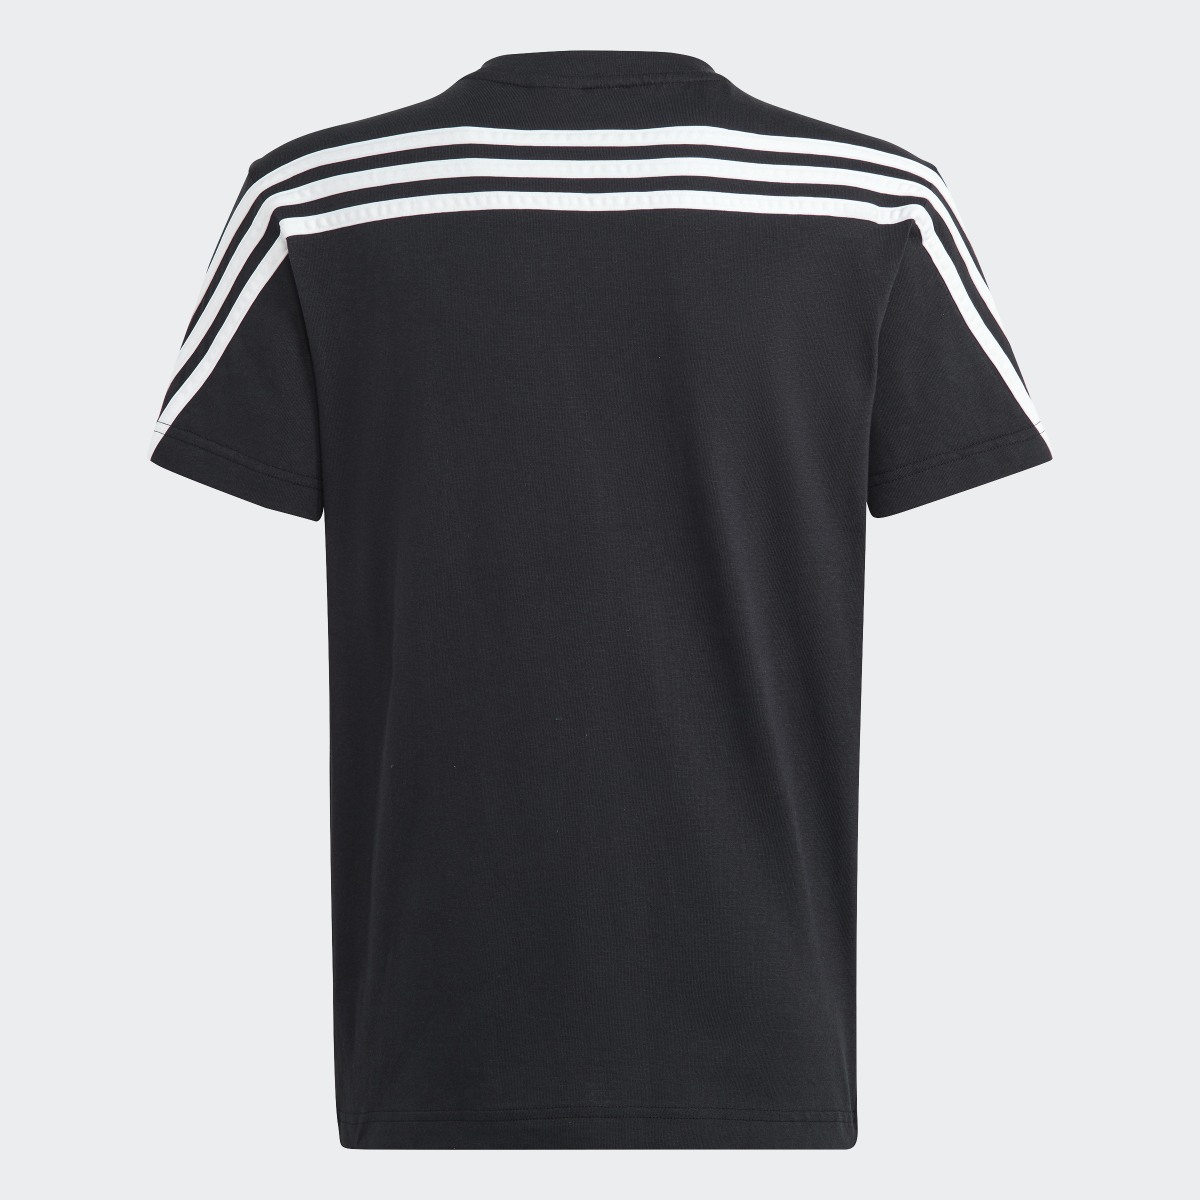 Adidas Future Icons 3-Stripes T-Shirt. 4